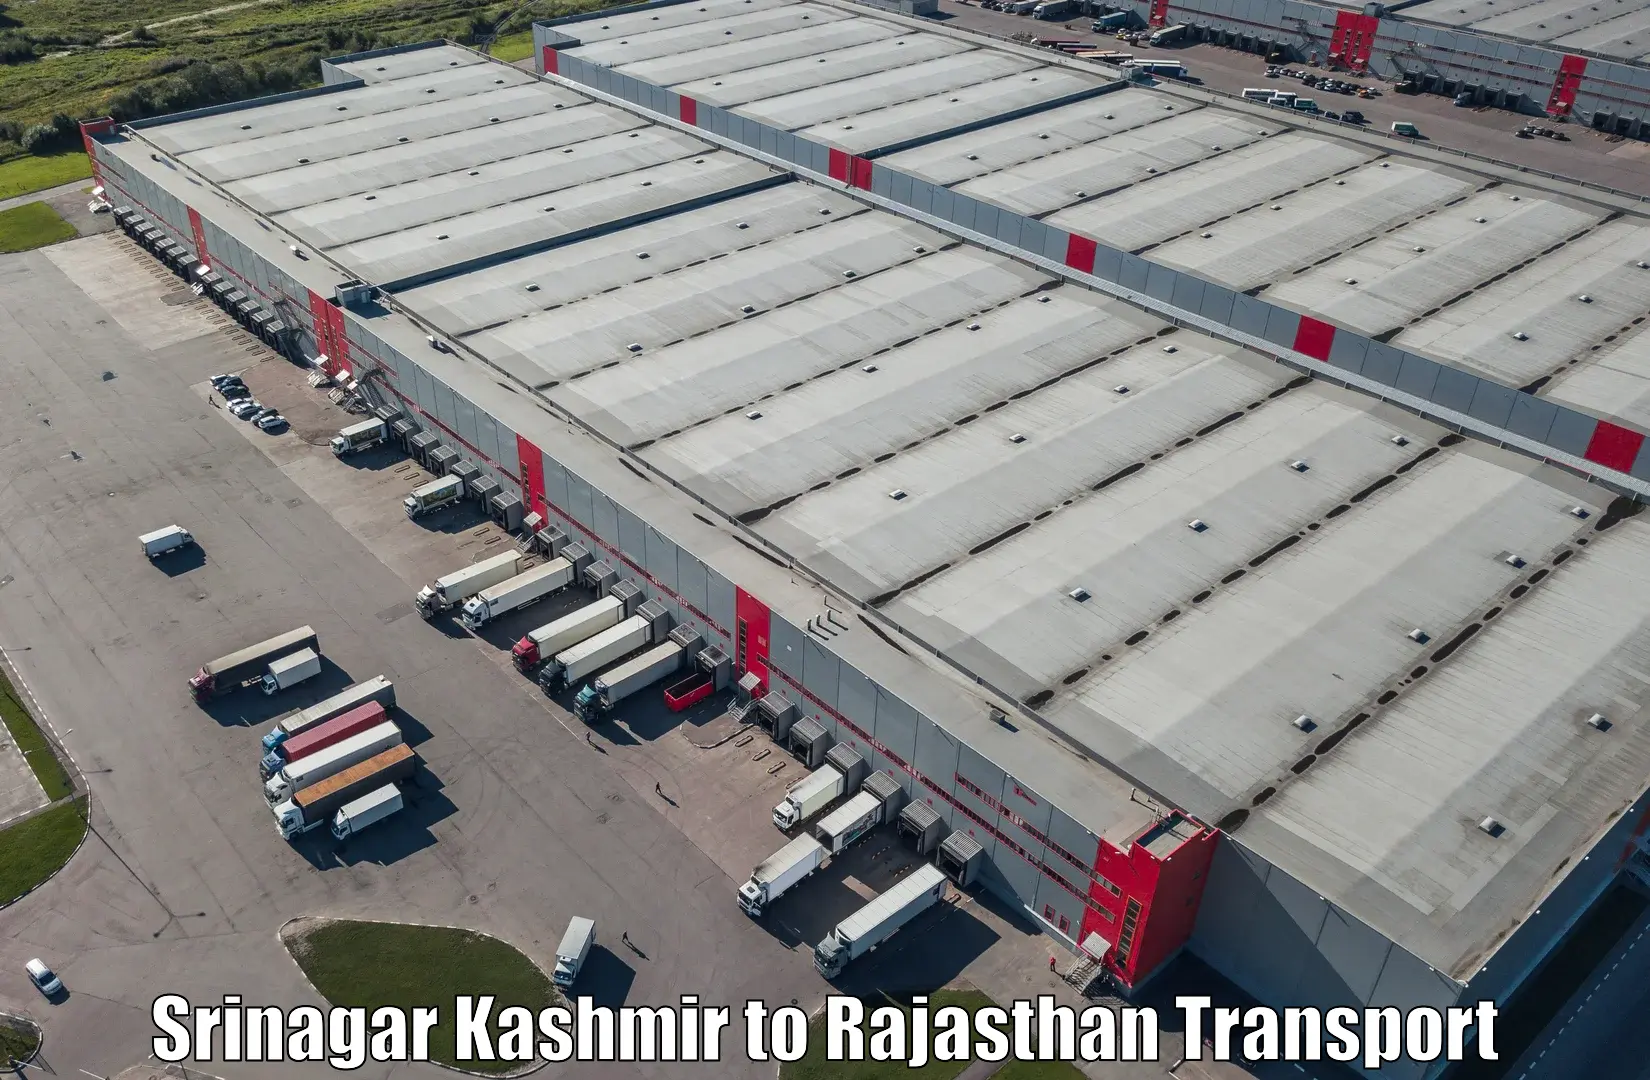 Lorry transport service Srinagar Kashmir to Yathalakunta